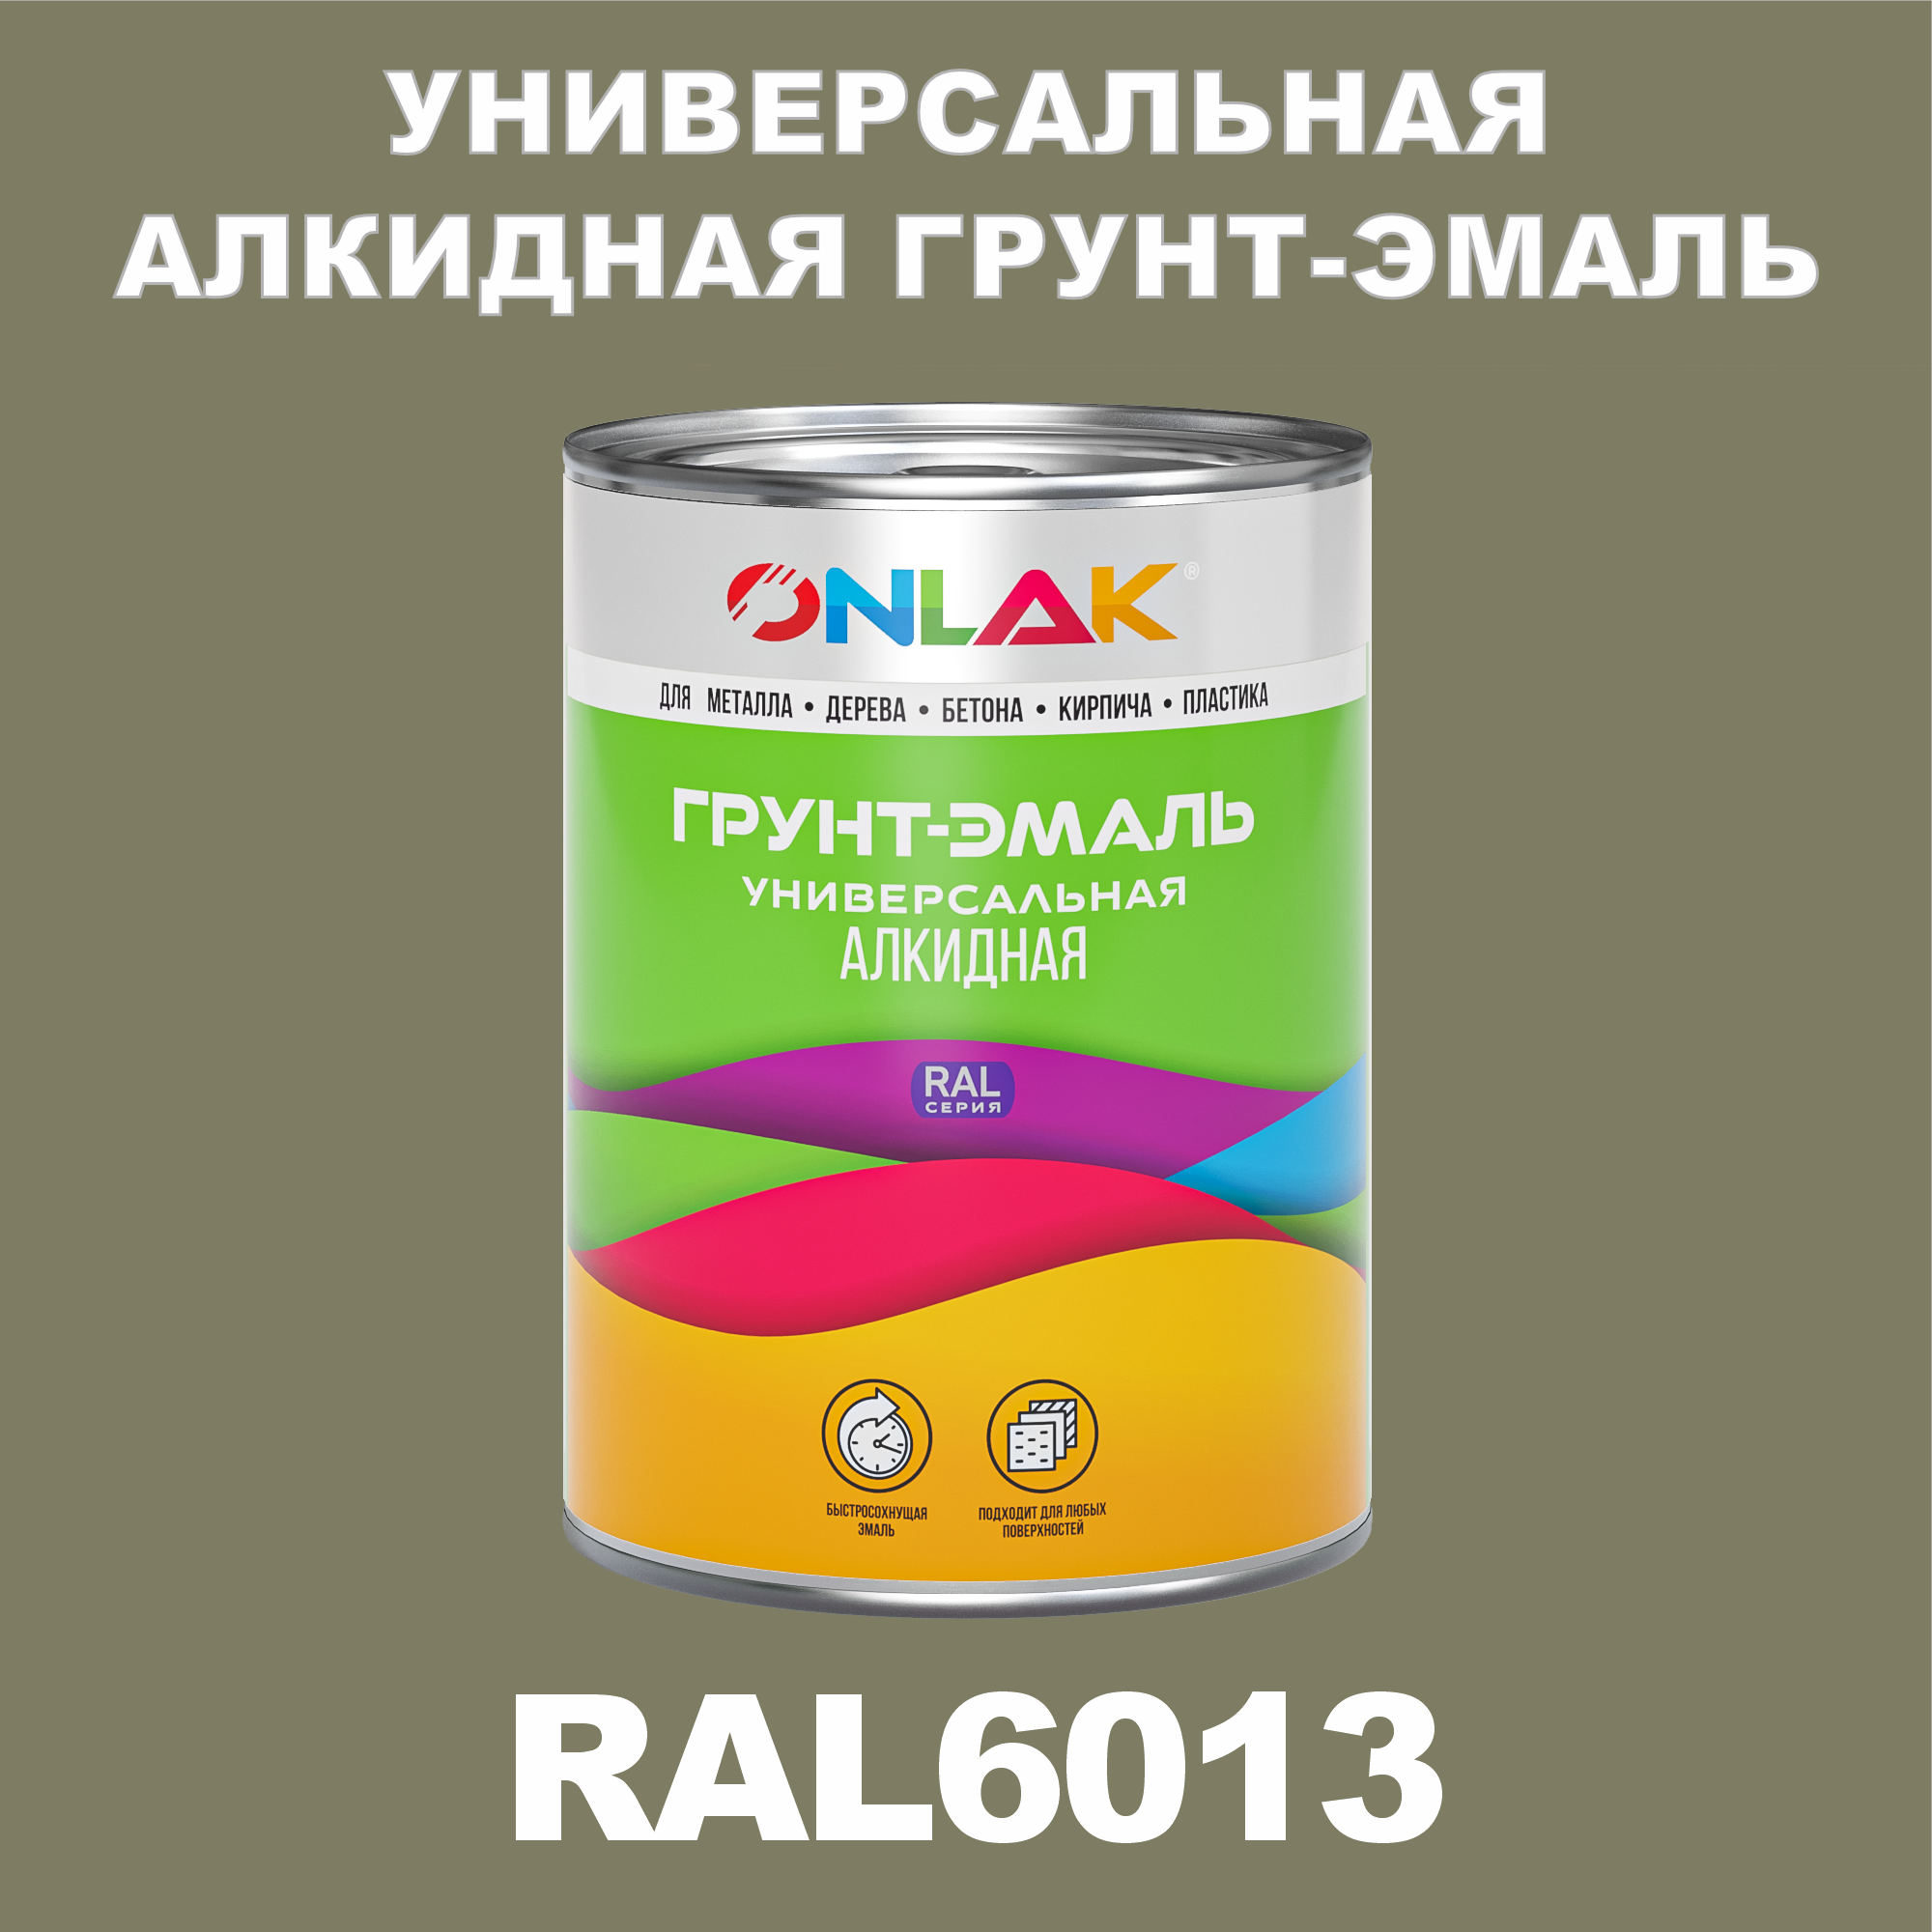 Грунт-эмаль ONLAK 1К RAL6013 антикоррозионная алкидная по металлу по ржавчине 1 кг грунт эмаль yollo по ржавчине алкидная зеленая 0 9 кг